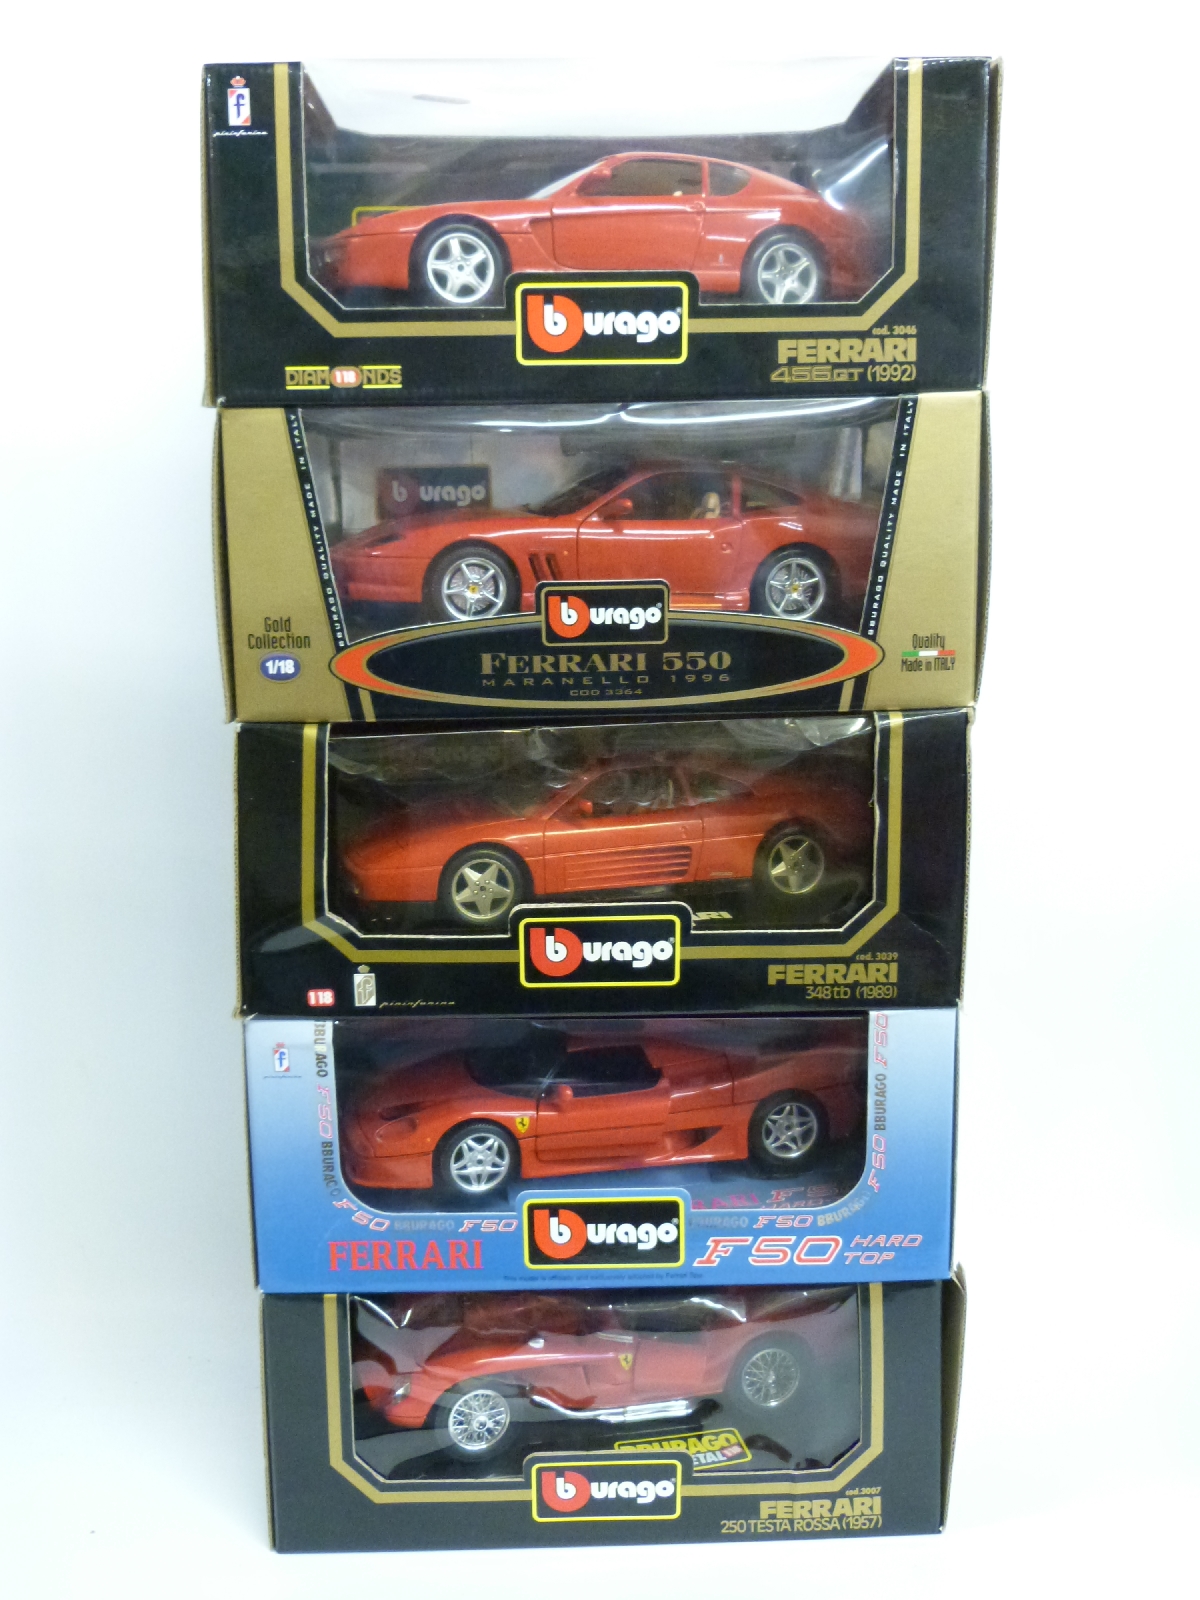 Five Burago 1:18 scale diecast model Ferrari sports cars,